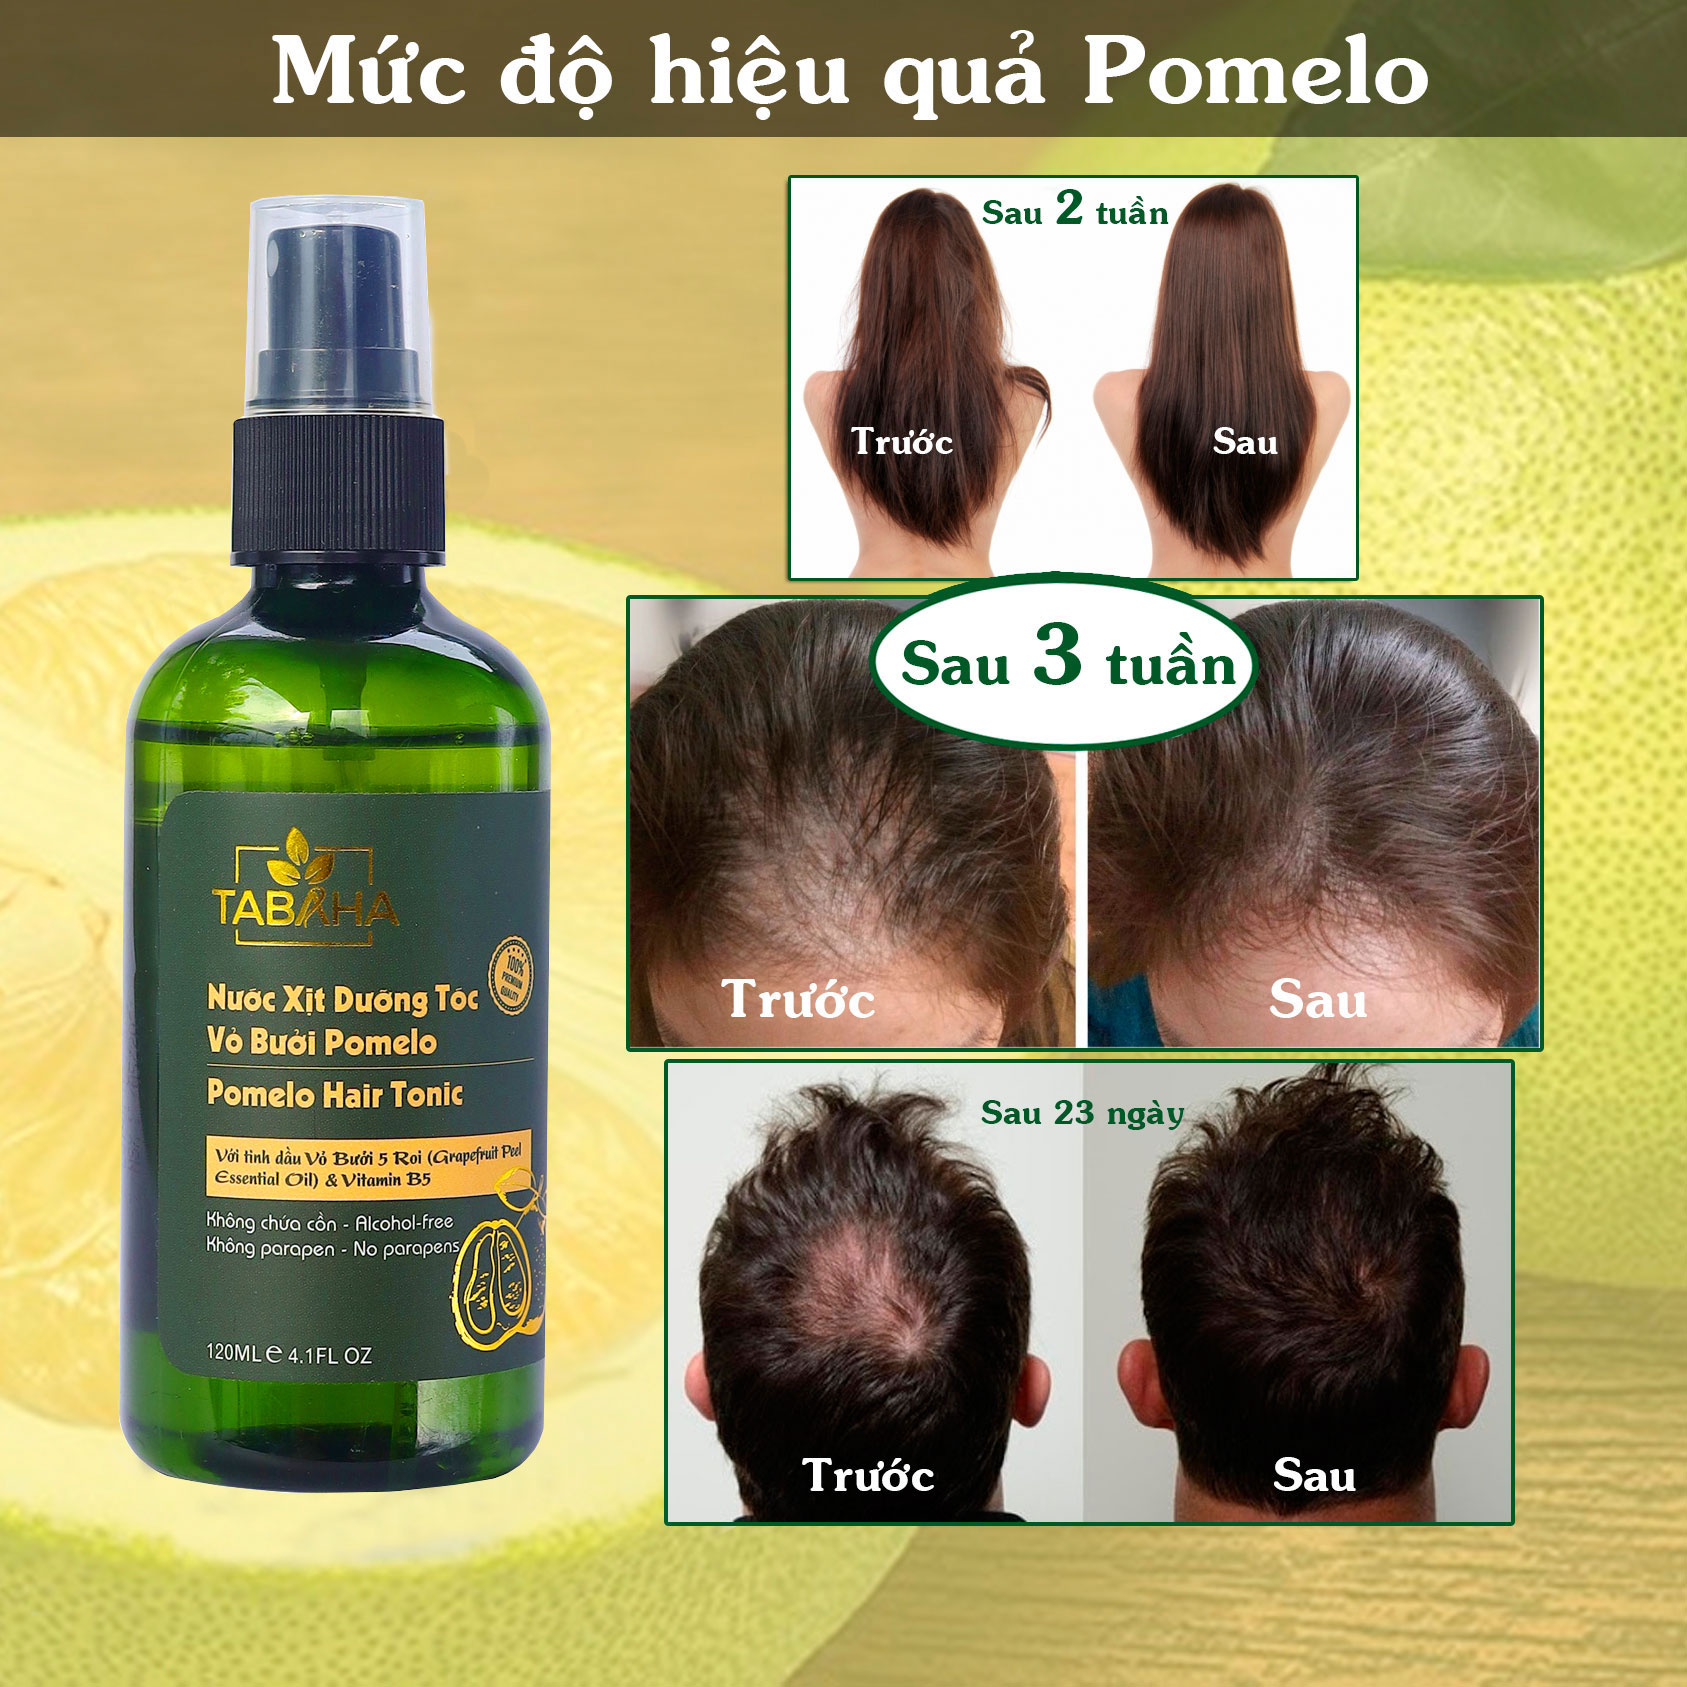 Combo 2 Chai xịt tinh dầu bưởi kích mọc tóc, giảm rụng tóc Pomelo Tabaha 120ml cho tóc dày và dài hơn gấp 2 đến 3 lần